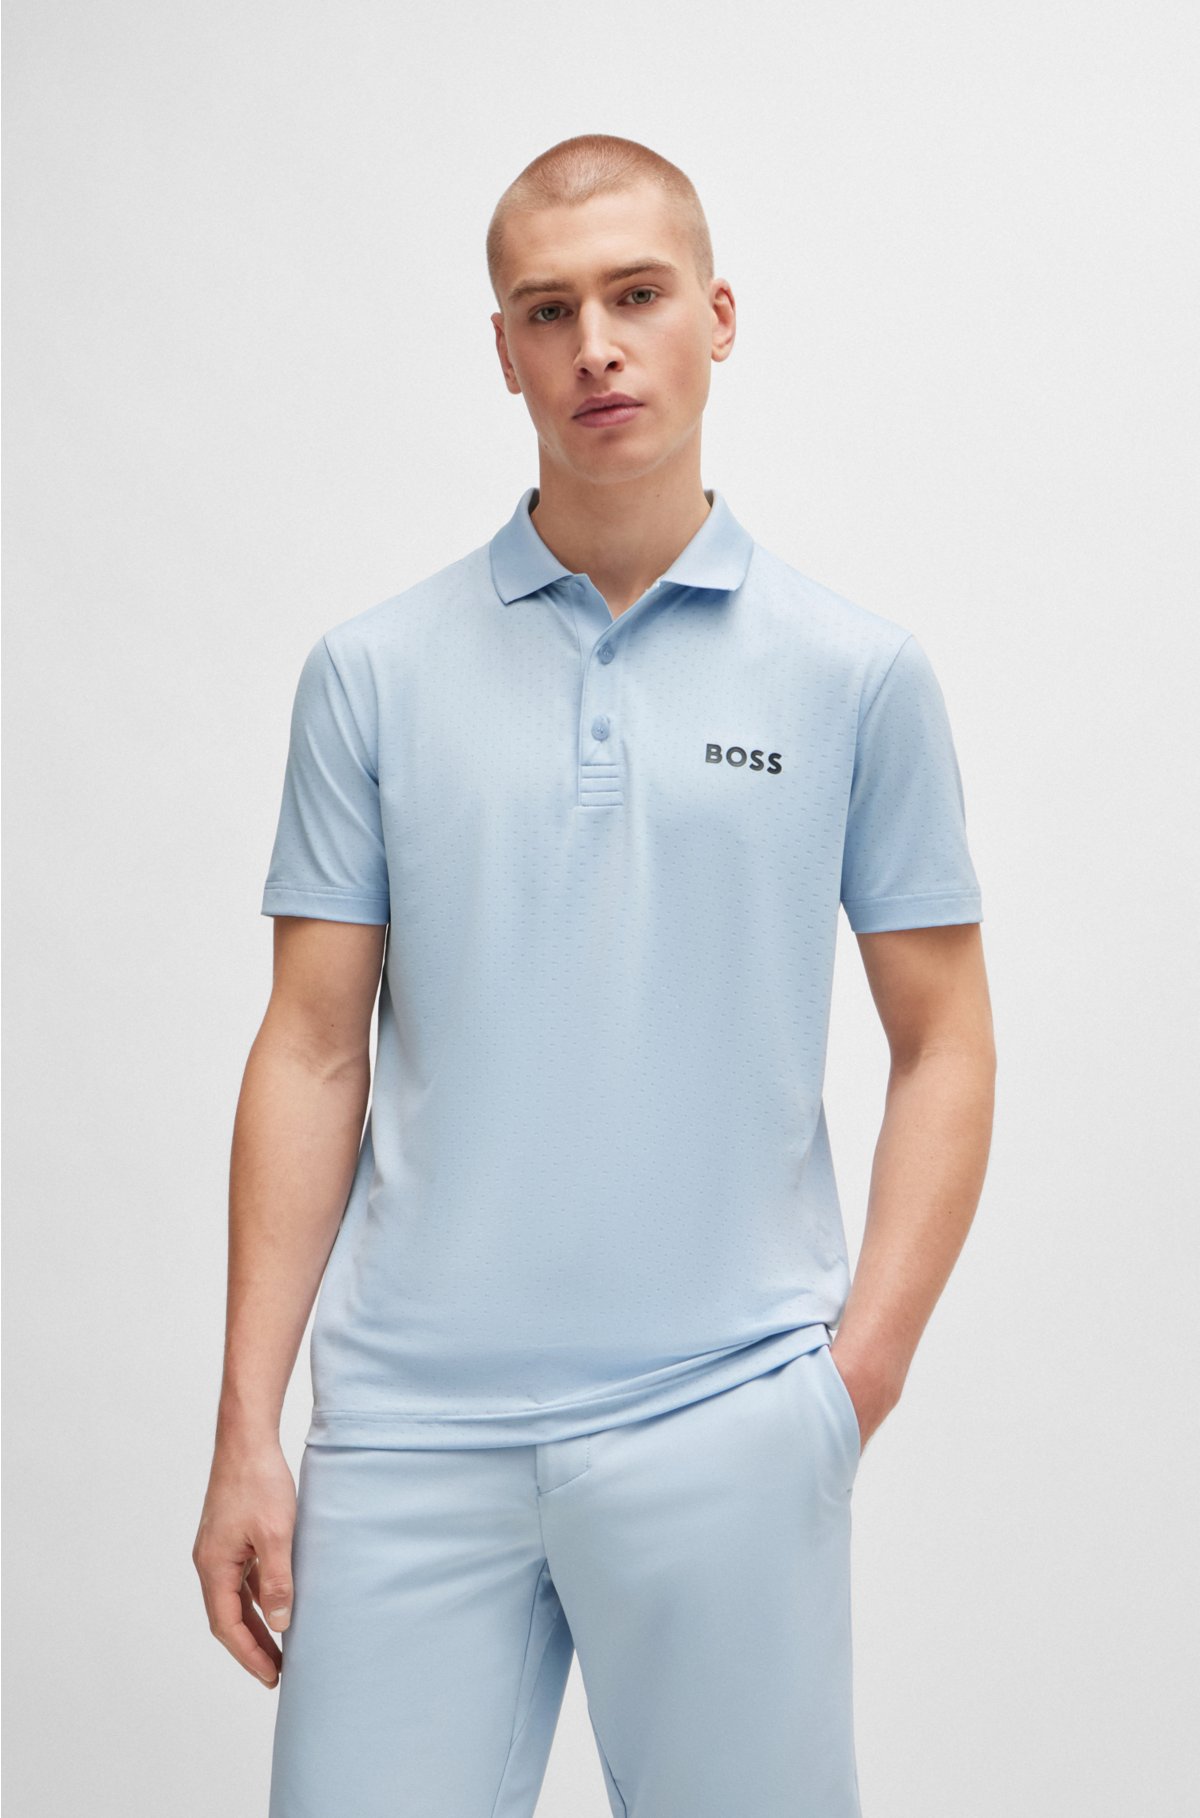 BOSS - Degradé-jacquard polo shirt with contrast logo